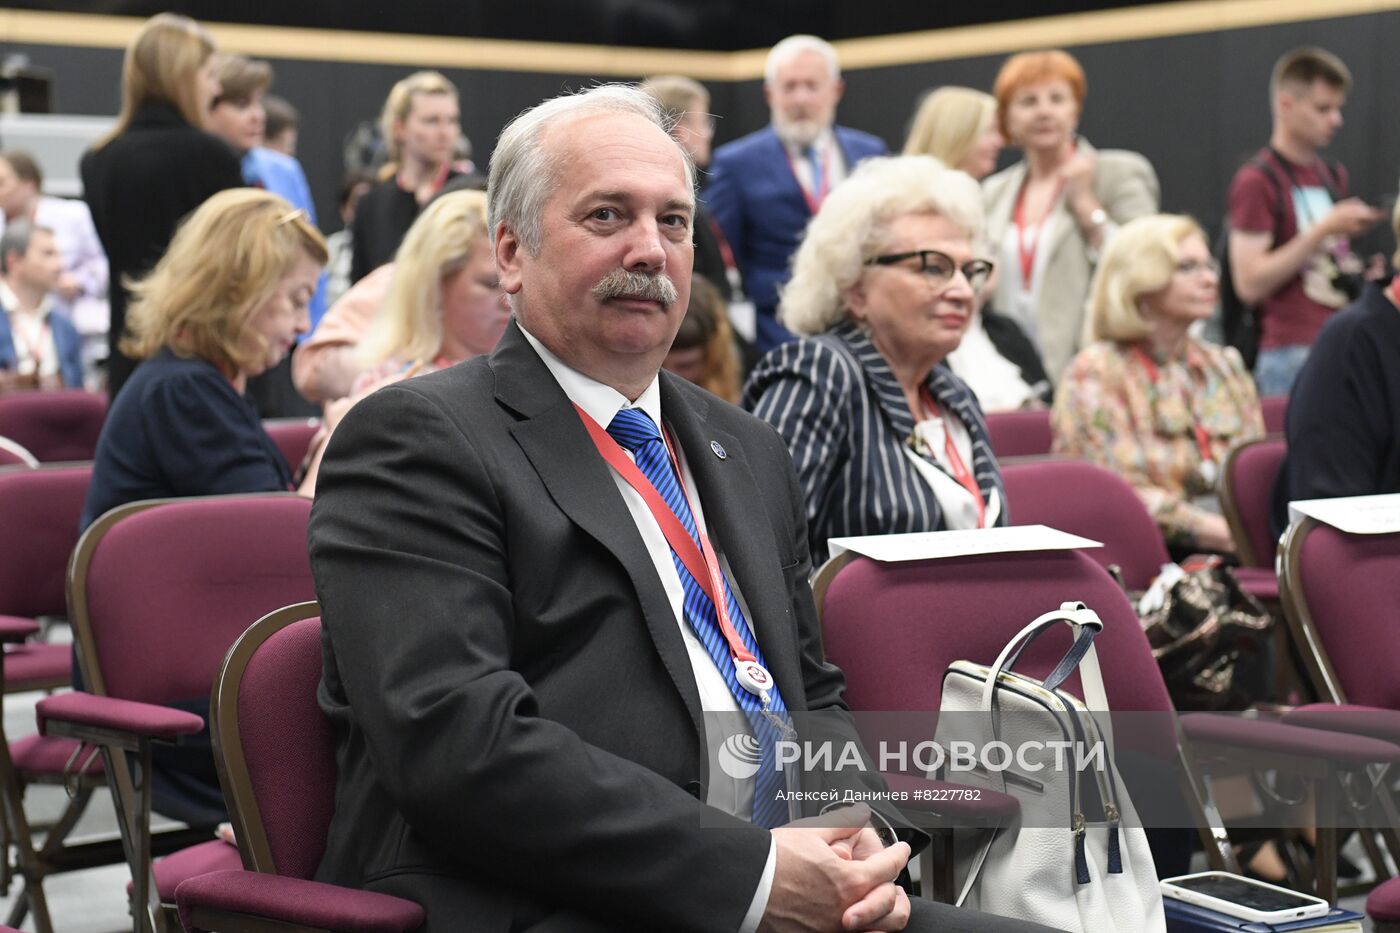 Петербургский международный юридический форум-2022